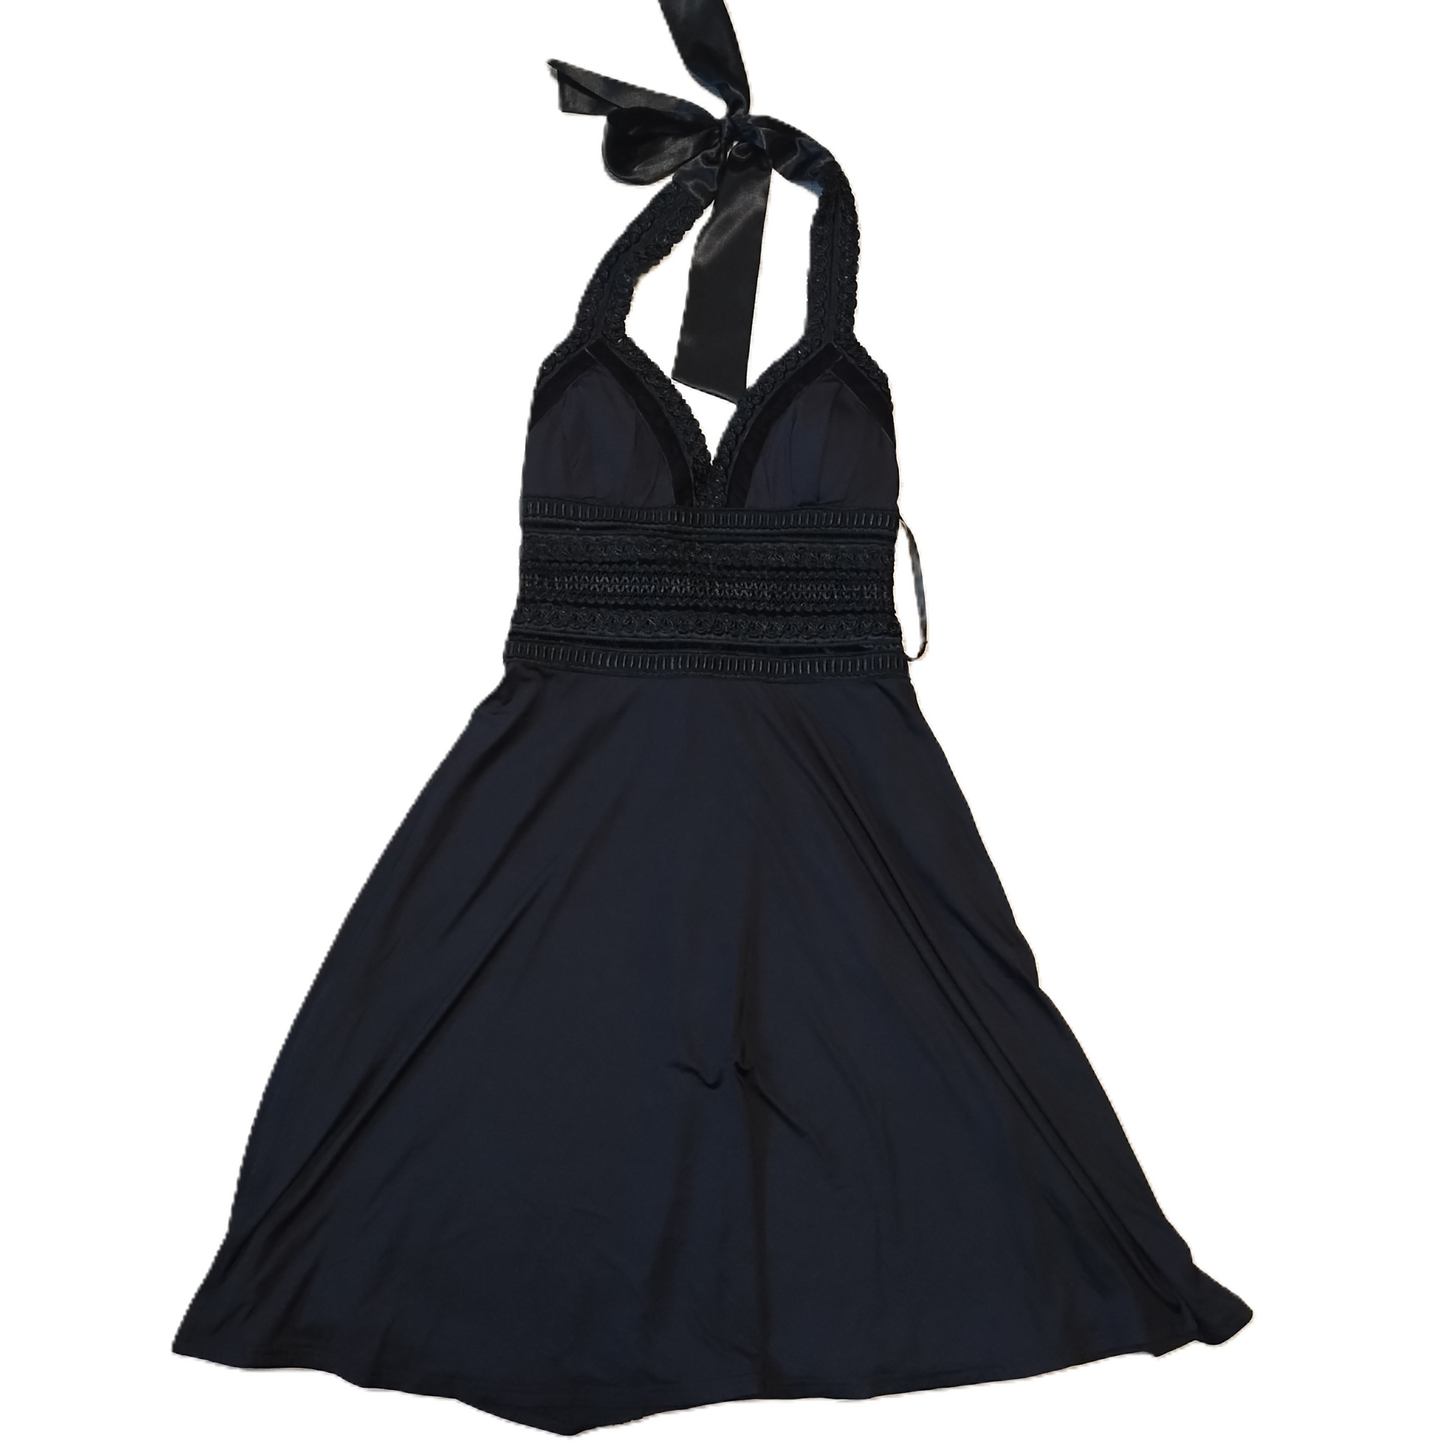 Dress Party Midi By White House Black Market  Size: Xs